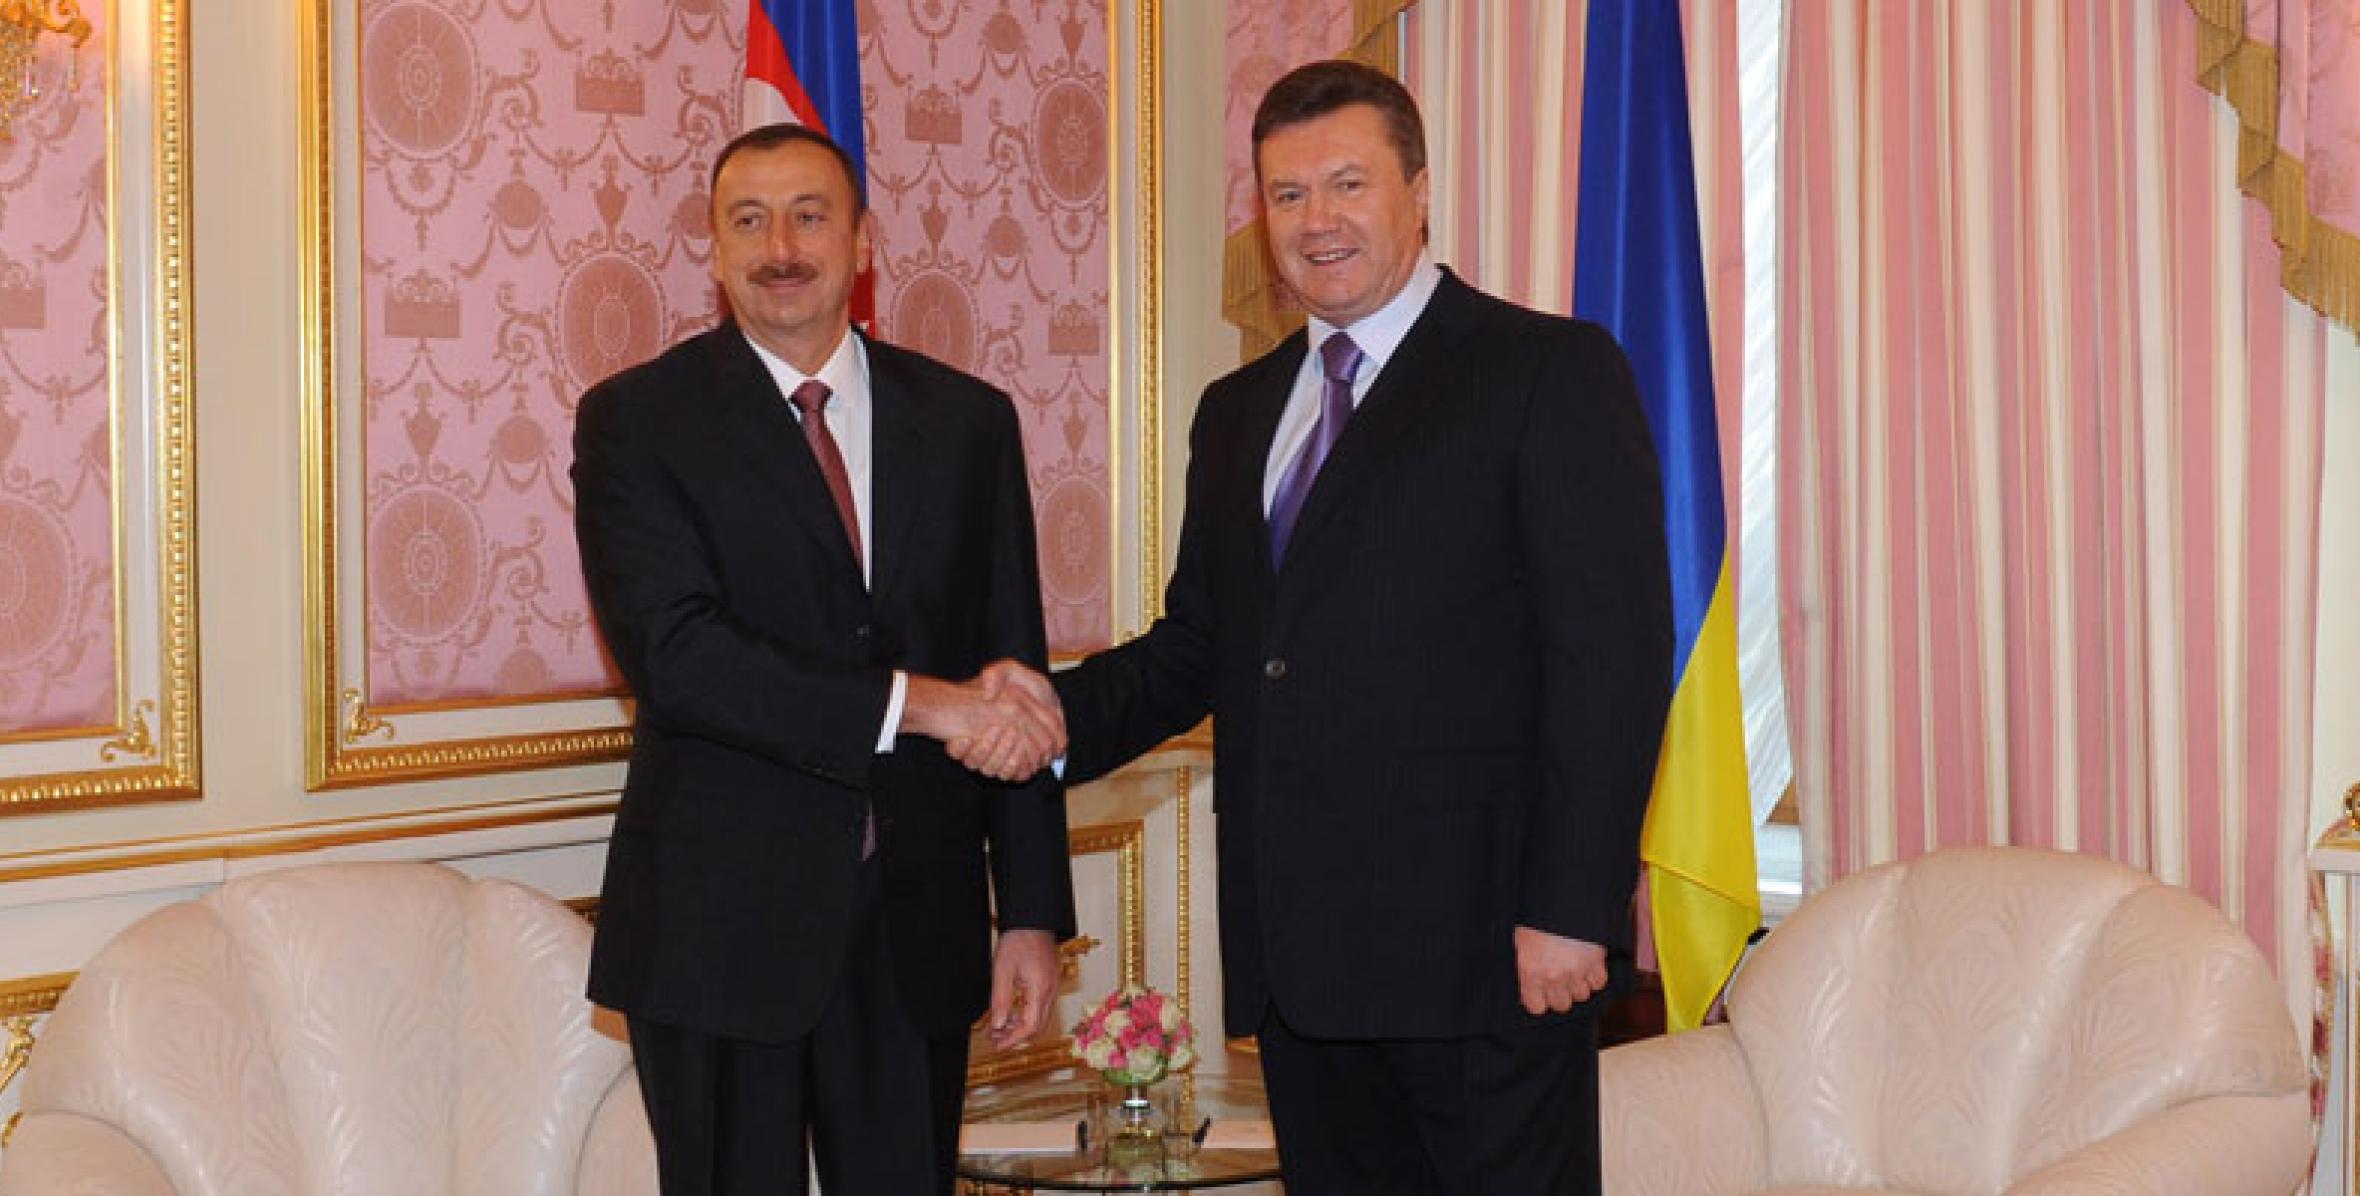 İlham Əliyevin və Ukrayna Prezidenti Viktor Yanukoviçin təkbətək görüşü olmuşdur